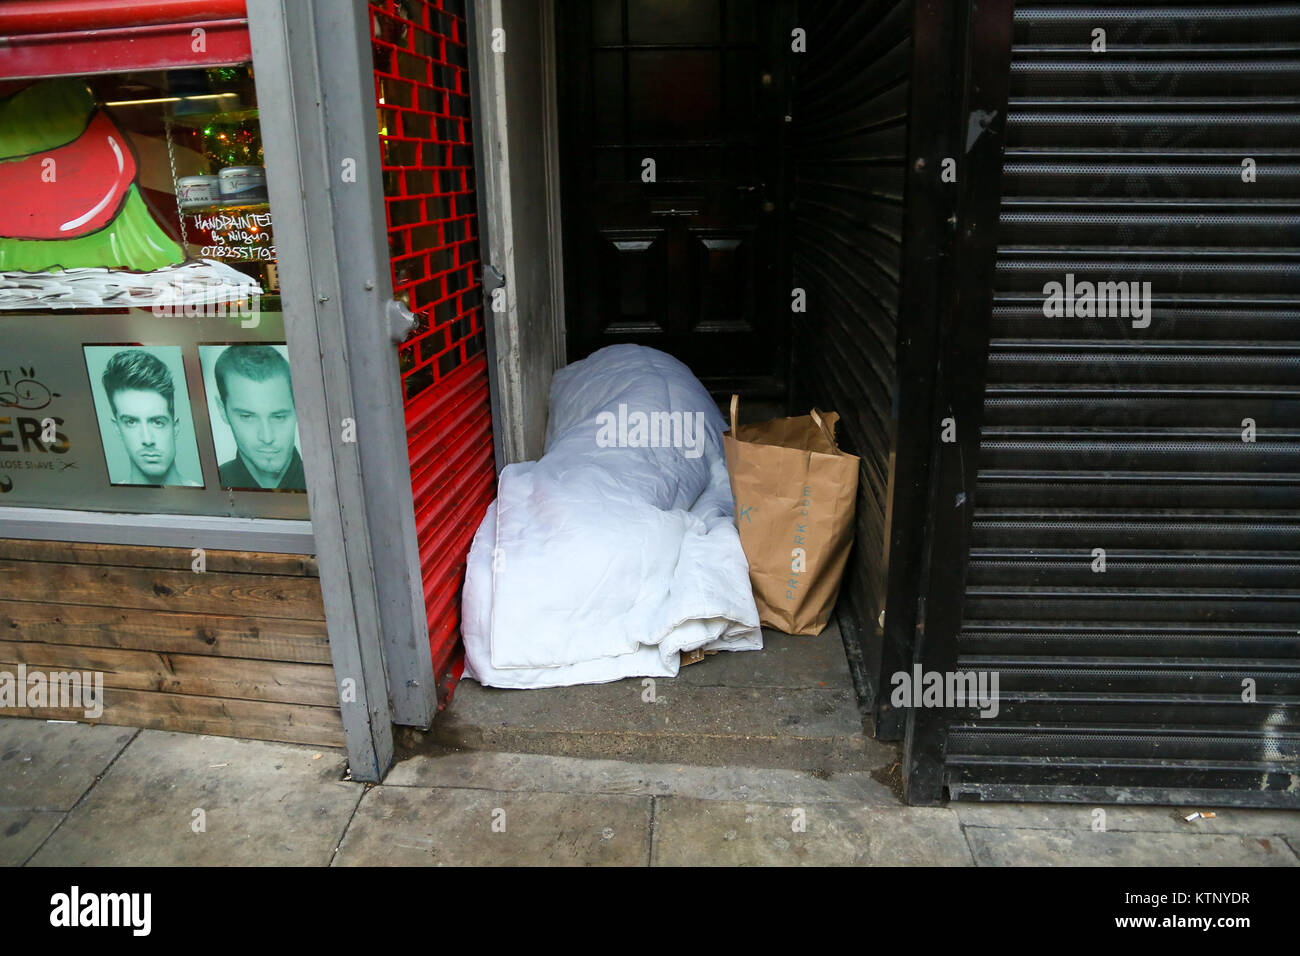 Le nord de Londres, Royaume-Uni. 28 Dec, 2017. Une personne dormant sur une porte très étroite avec l'écart entre les boutiques dans le nord de Londres après une nuit très froide. Selon le Comité des comptes publics plus de 9 000 personnes sont sans-abri dans les rues. Credit : Dinendra Haria/Alamy Live News Banque D'Images